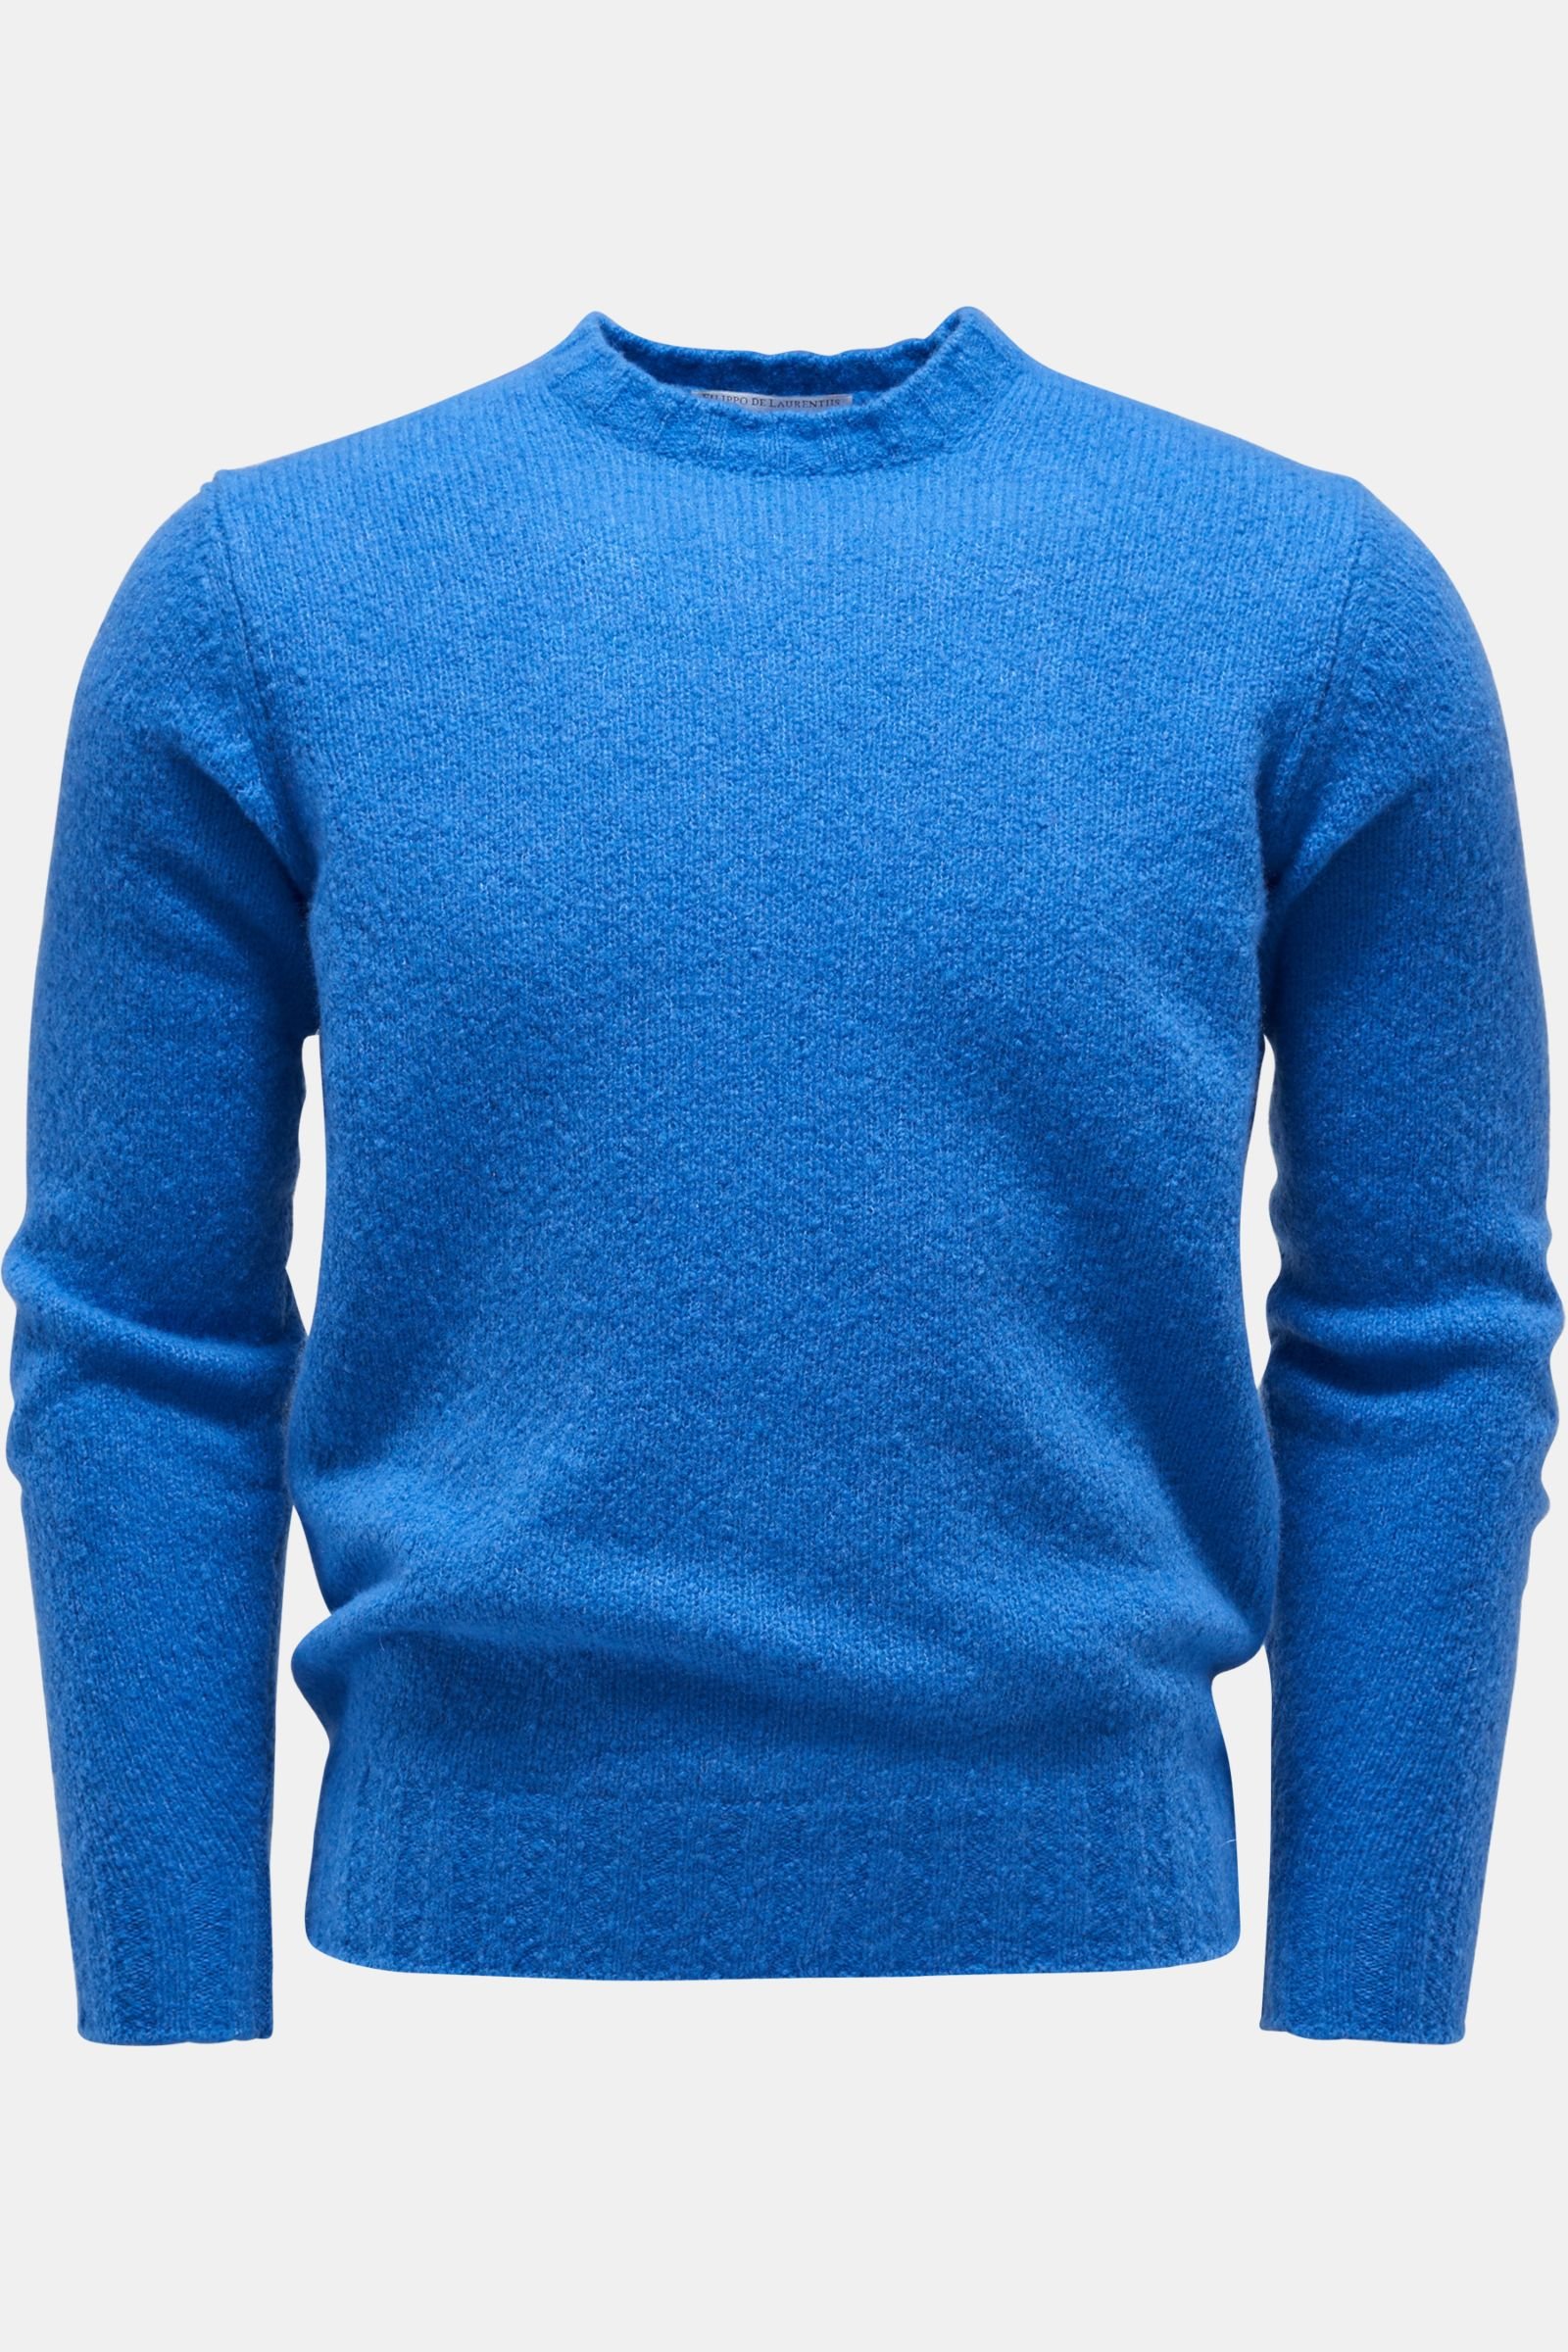 Rundhals-Pullover blau